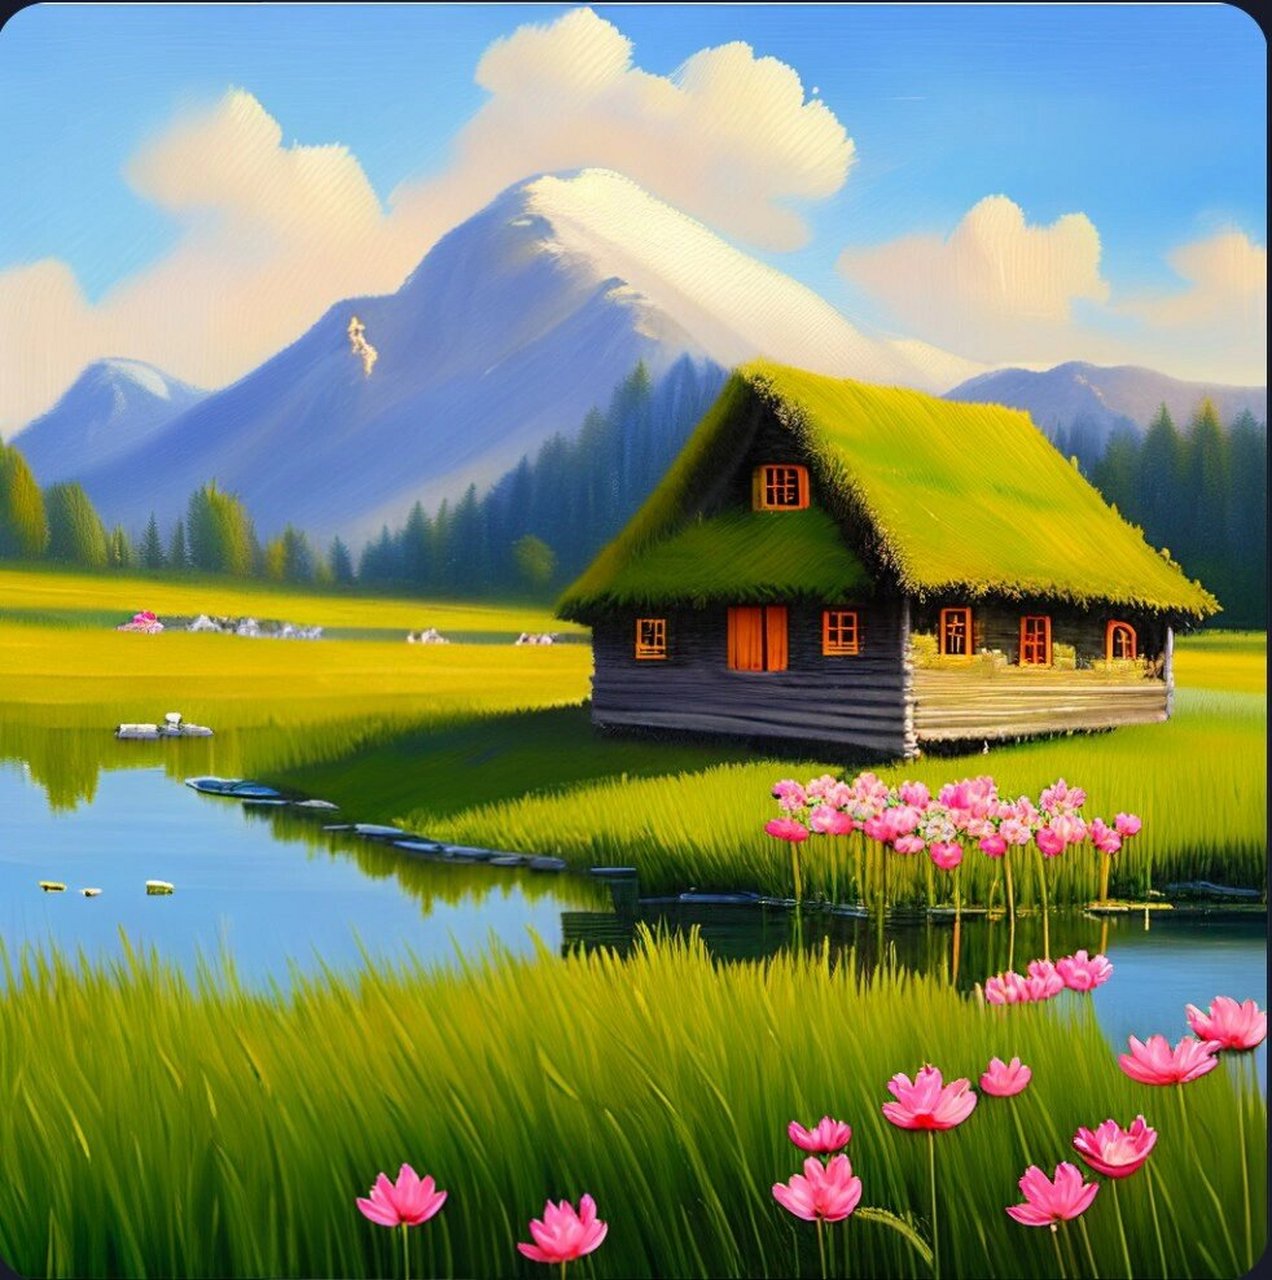 乡村风景 温馨的茅草屋